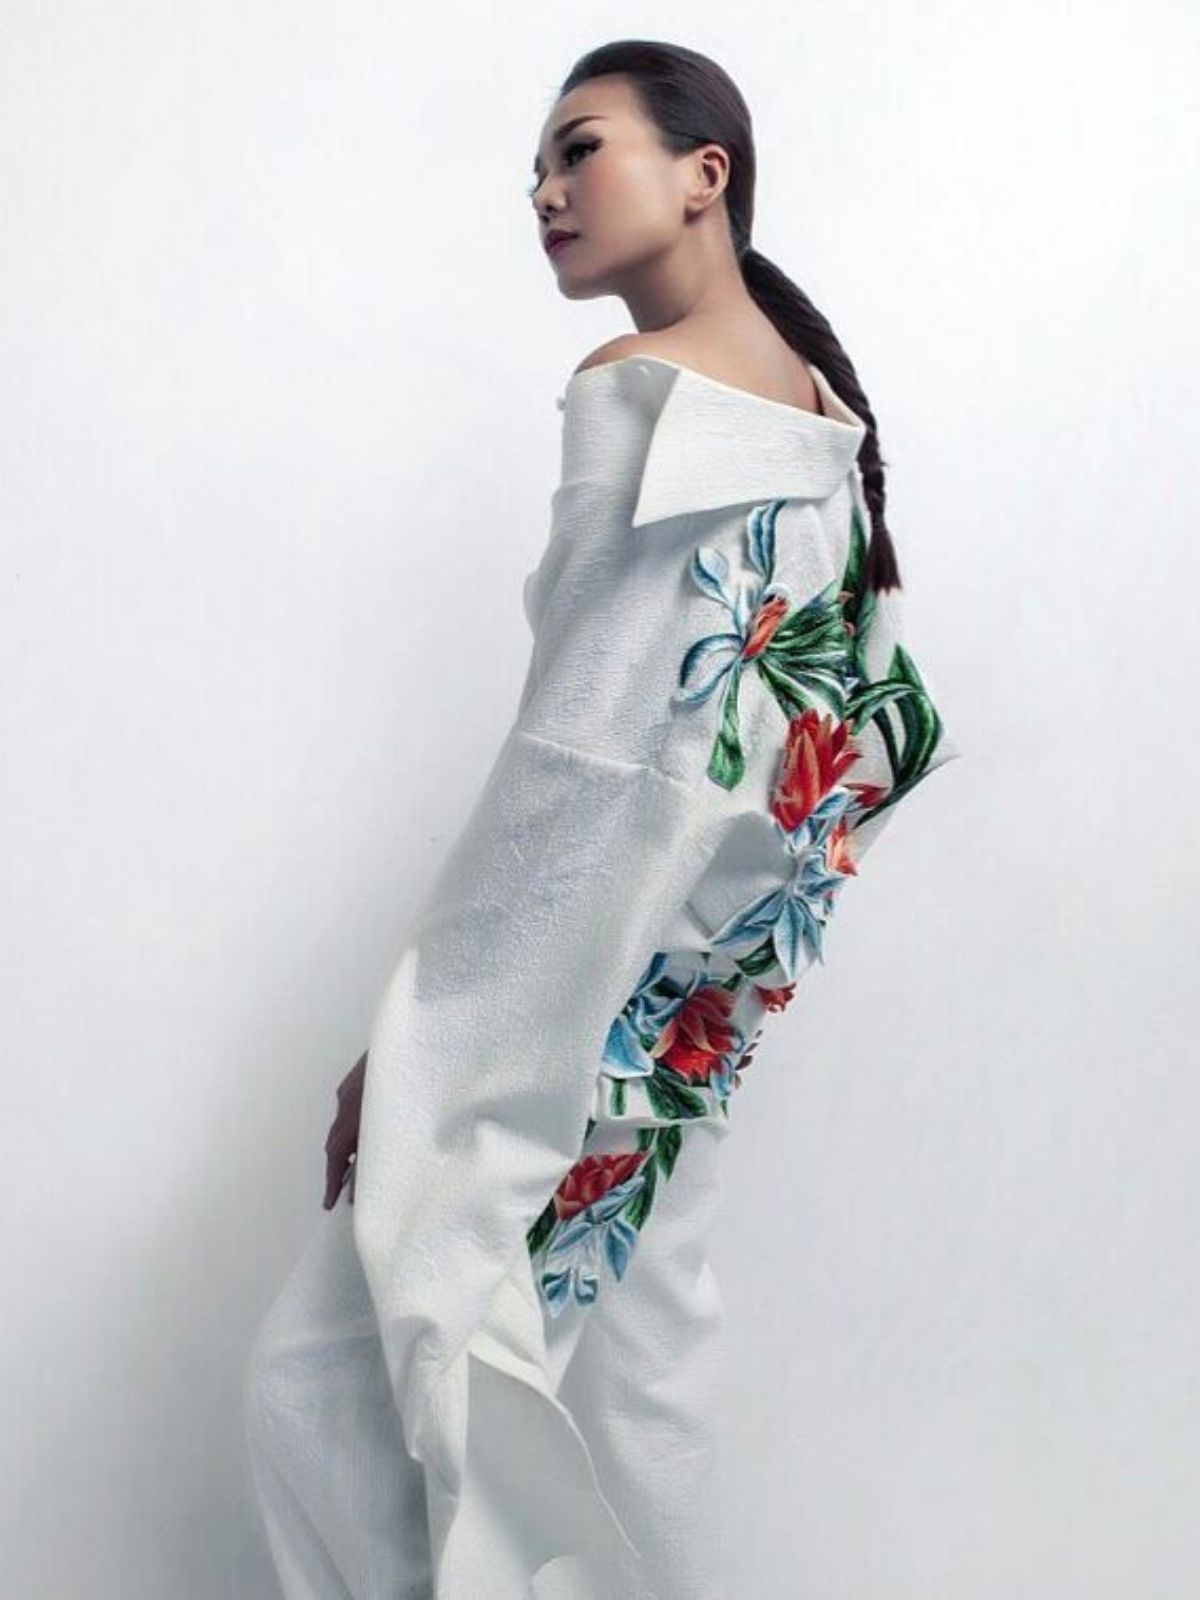 off-shoulder blouse - model with flower shirt - on thursd nguyen